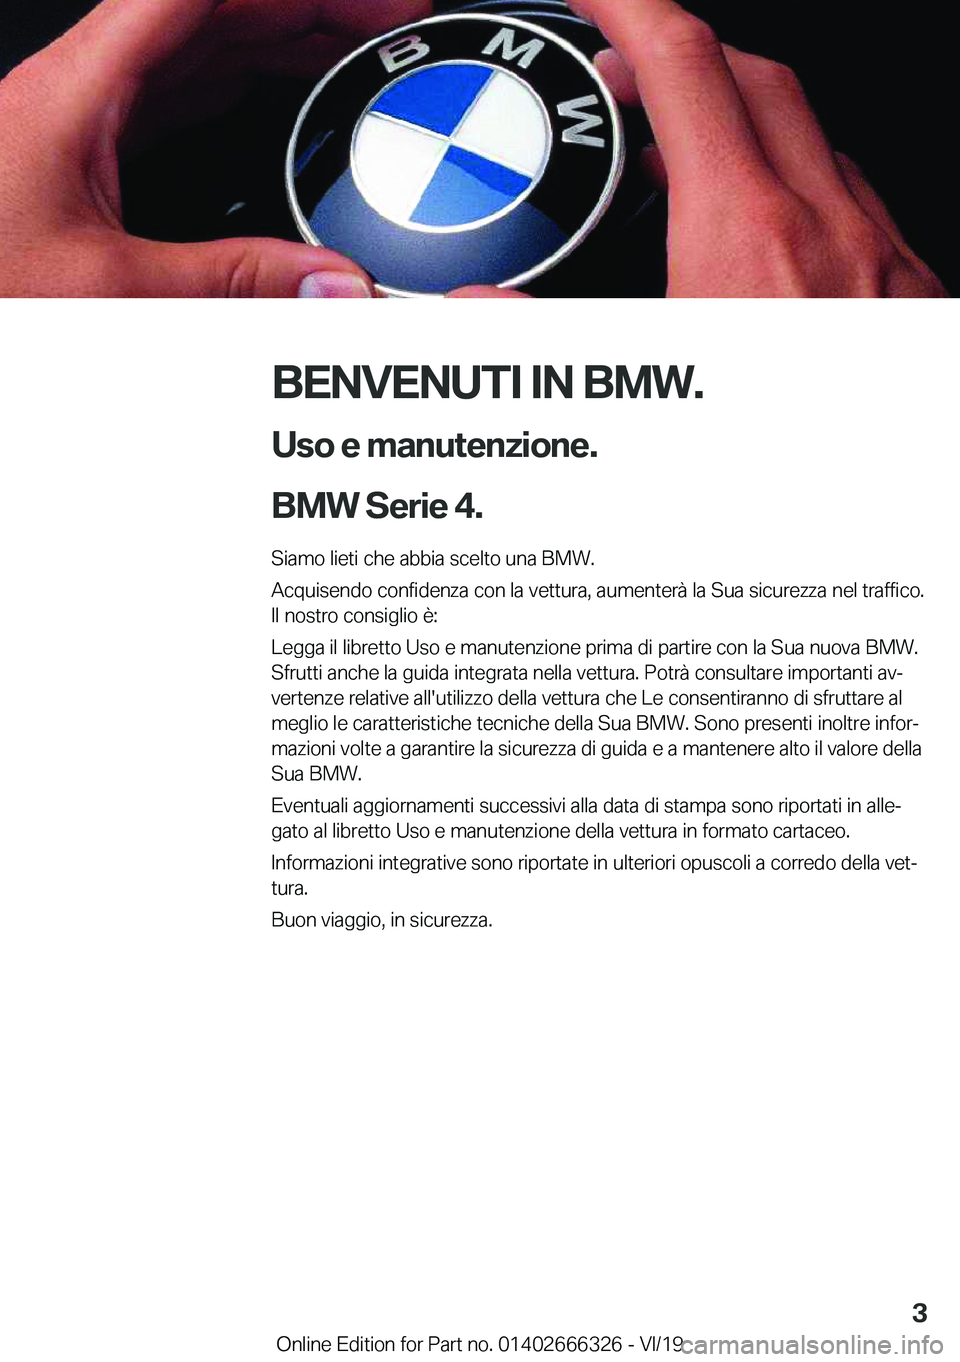 BMW 4 SERIES COUPE 2020  Libretti Di Uso E manutenzione (in Italian) �B�E�N�V�E�N�U�T�I��I�N��B�M�W�.�U�s�o��e��m�a�n�u�t�e�n�z�i�o�n�e�.
�B�M�W��S�e�r�i�e��4�.�
�S�i�a�m�o��l�i�e�t�i��c�h�e��a�b�b�i�a��s�c�e�l�t�o��u�n�a��B�M�W�. �A�c�q�u�i�s�e�n�d�o��c�